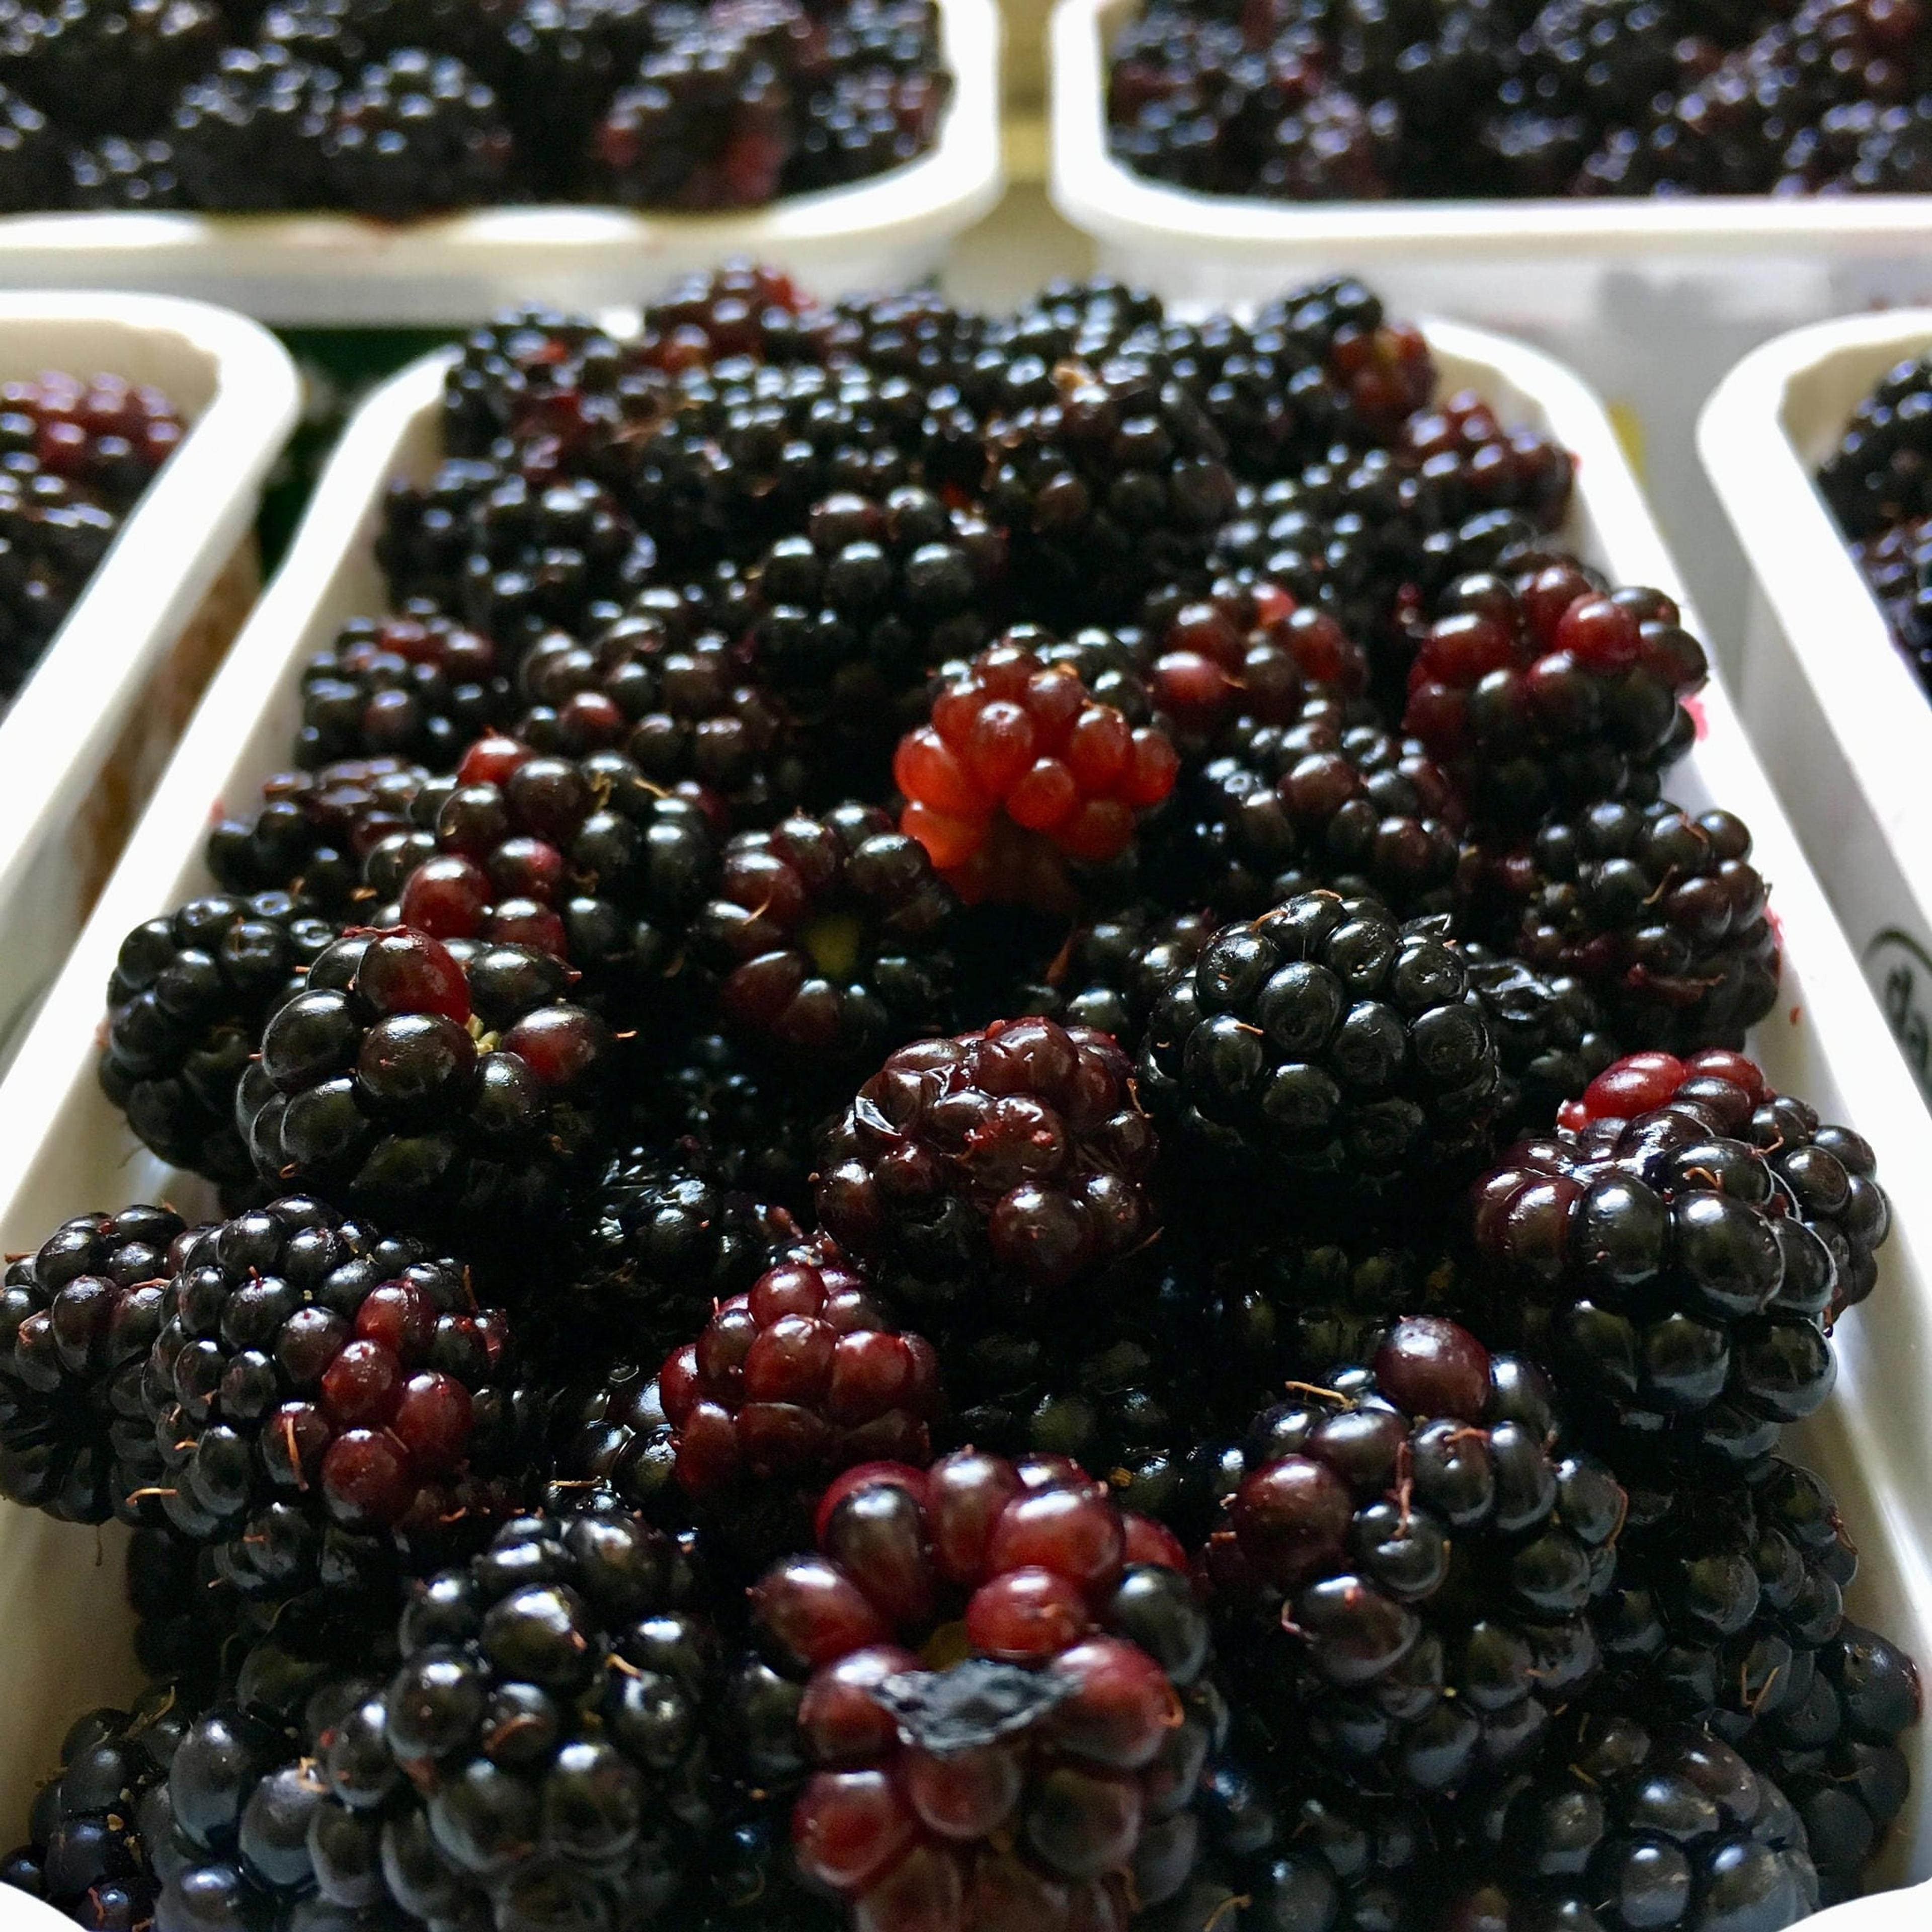 Image of blackberries